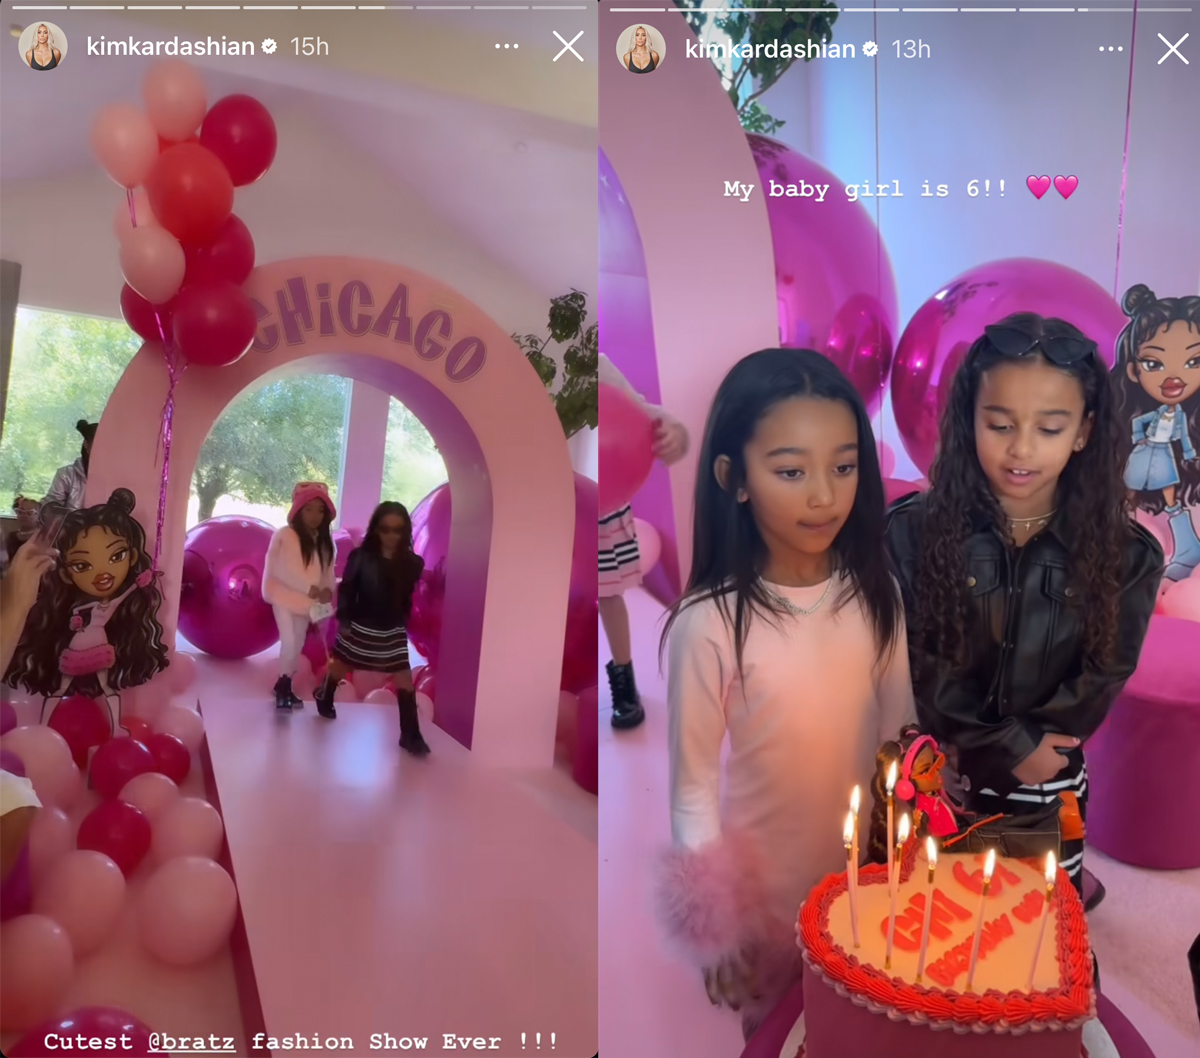 ¡Kim Kardashian organiza una fiesta temática de Chicago Bratz para su hija por su sexto cumpleaños!  ¡MIRAR!